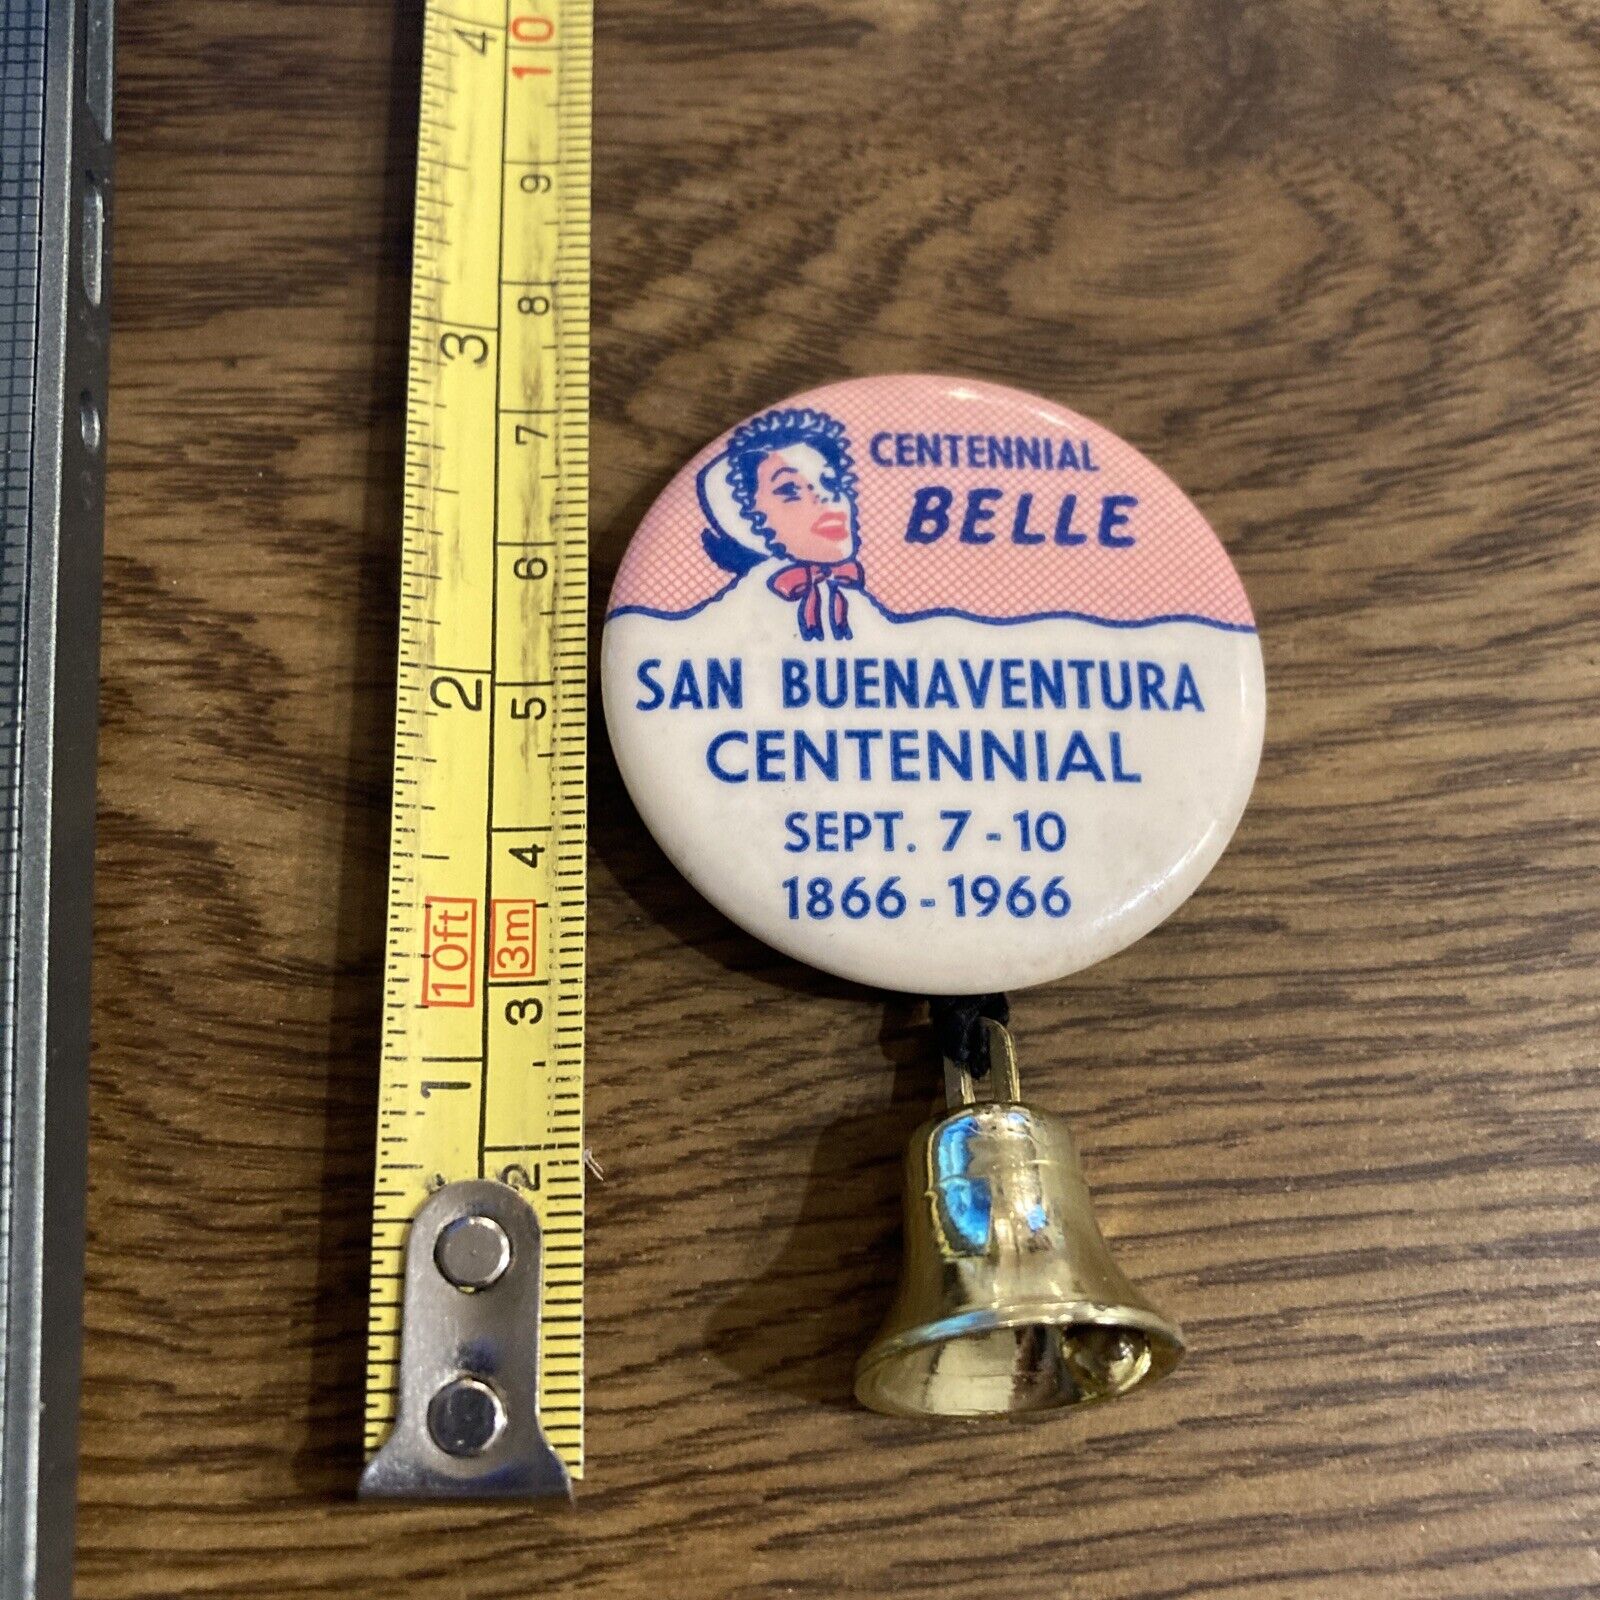 Vintage Pin - Centennial Belle, San Buenaventura Centennial, sept 7-10 1966